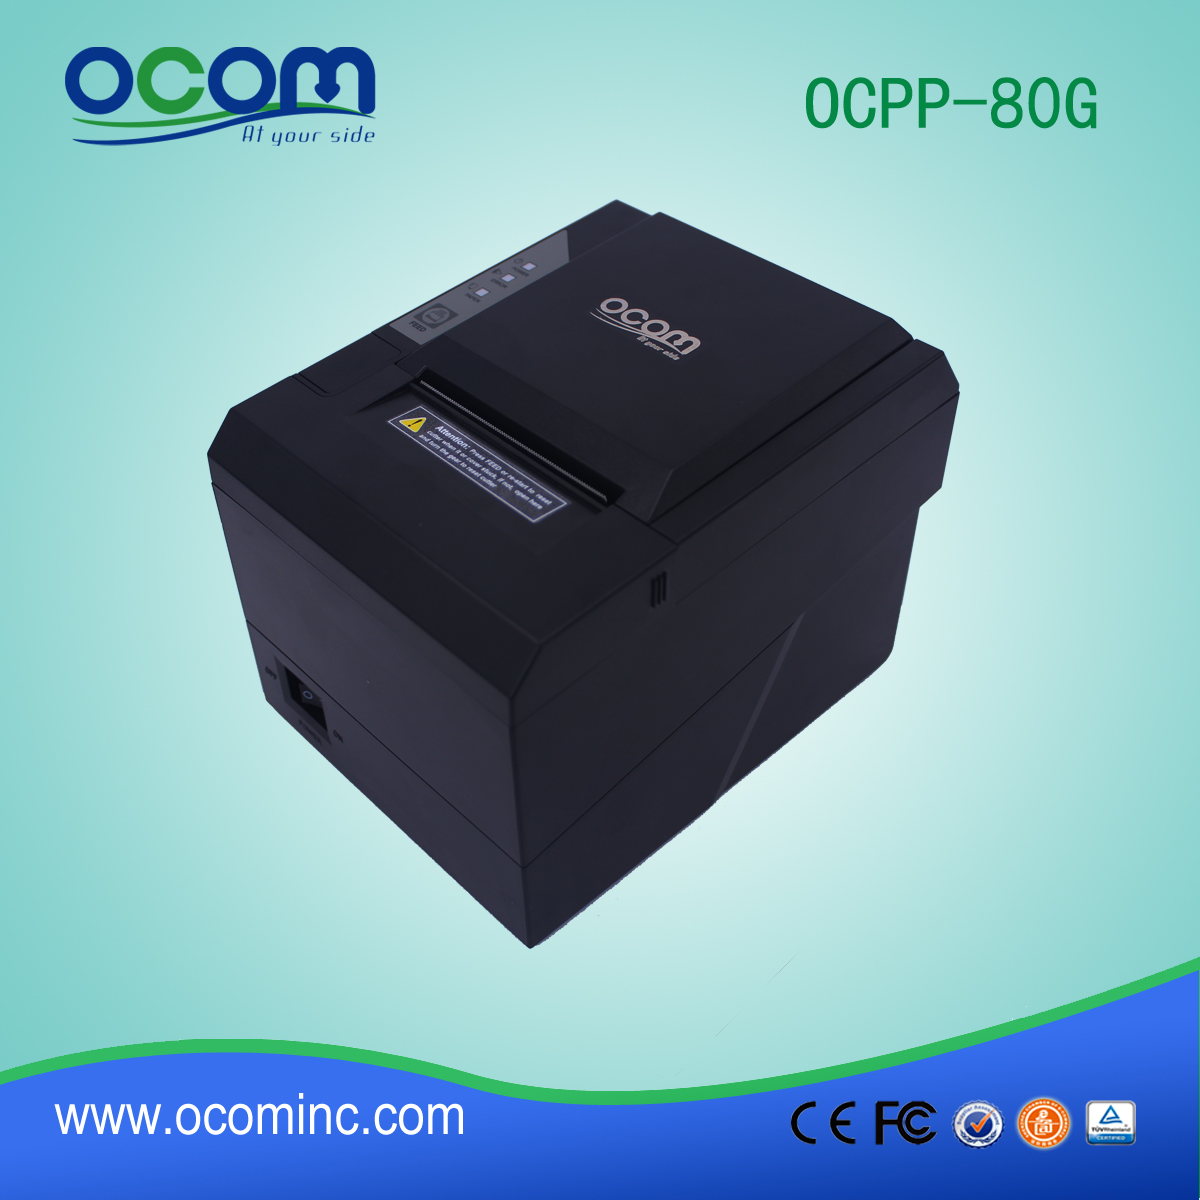 rifornimento della fabbrica prezzo stampante termica 3 ricevimento pollici (OCPP-80G)